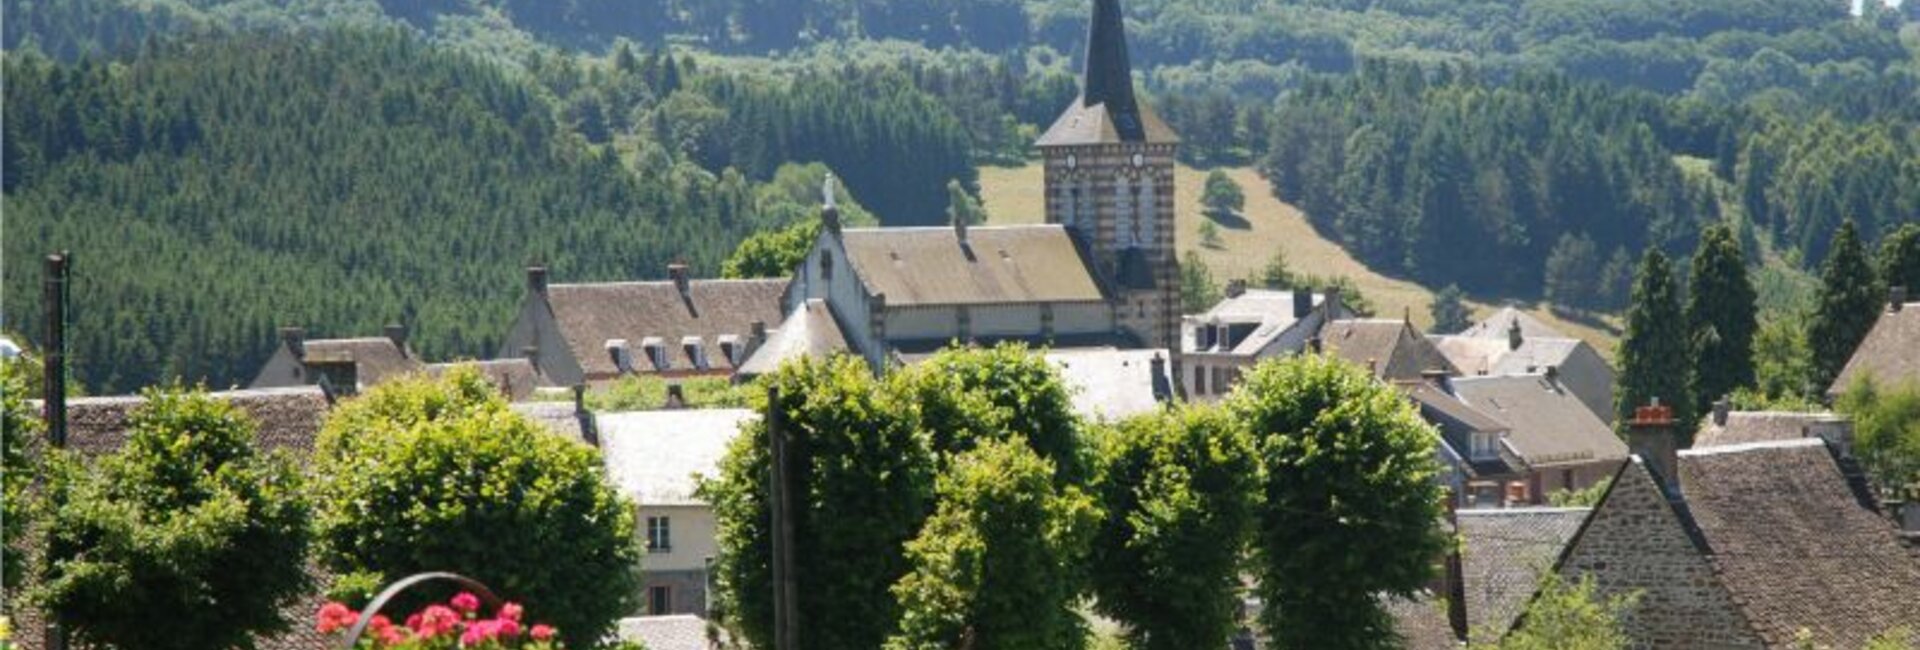 La vie associative de la commune de Saint-Sauves d'Auvergne (63)